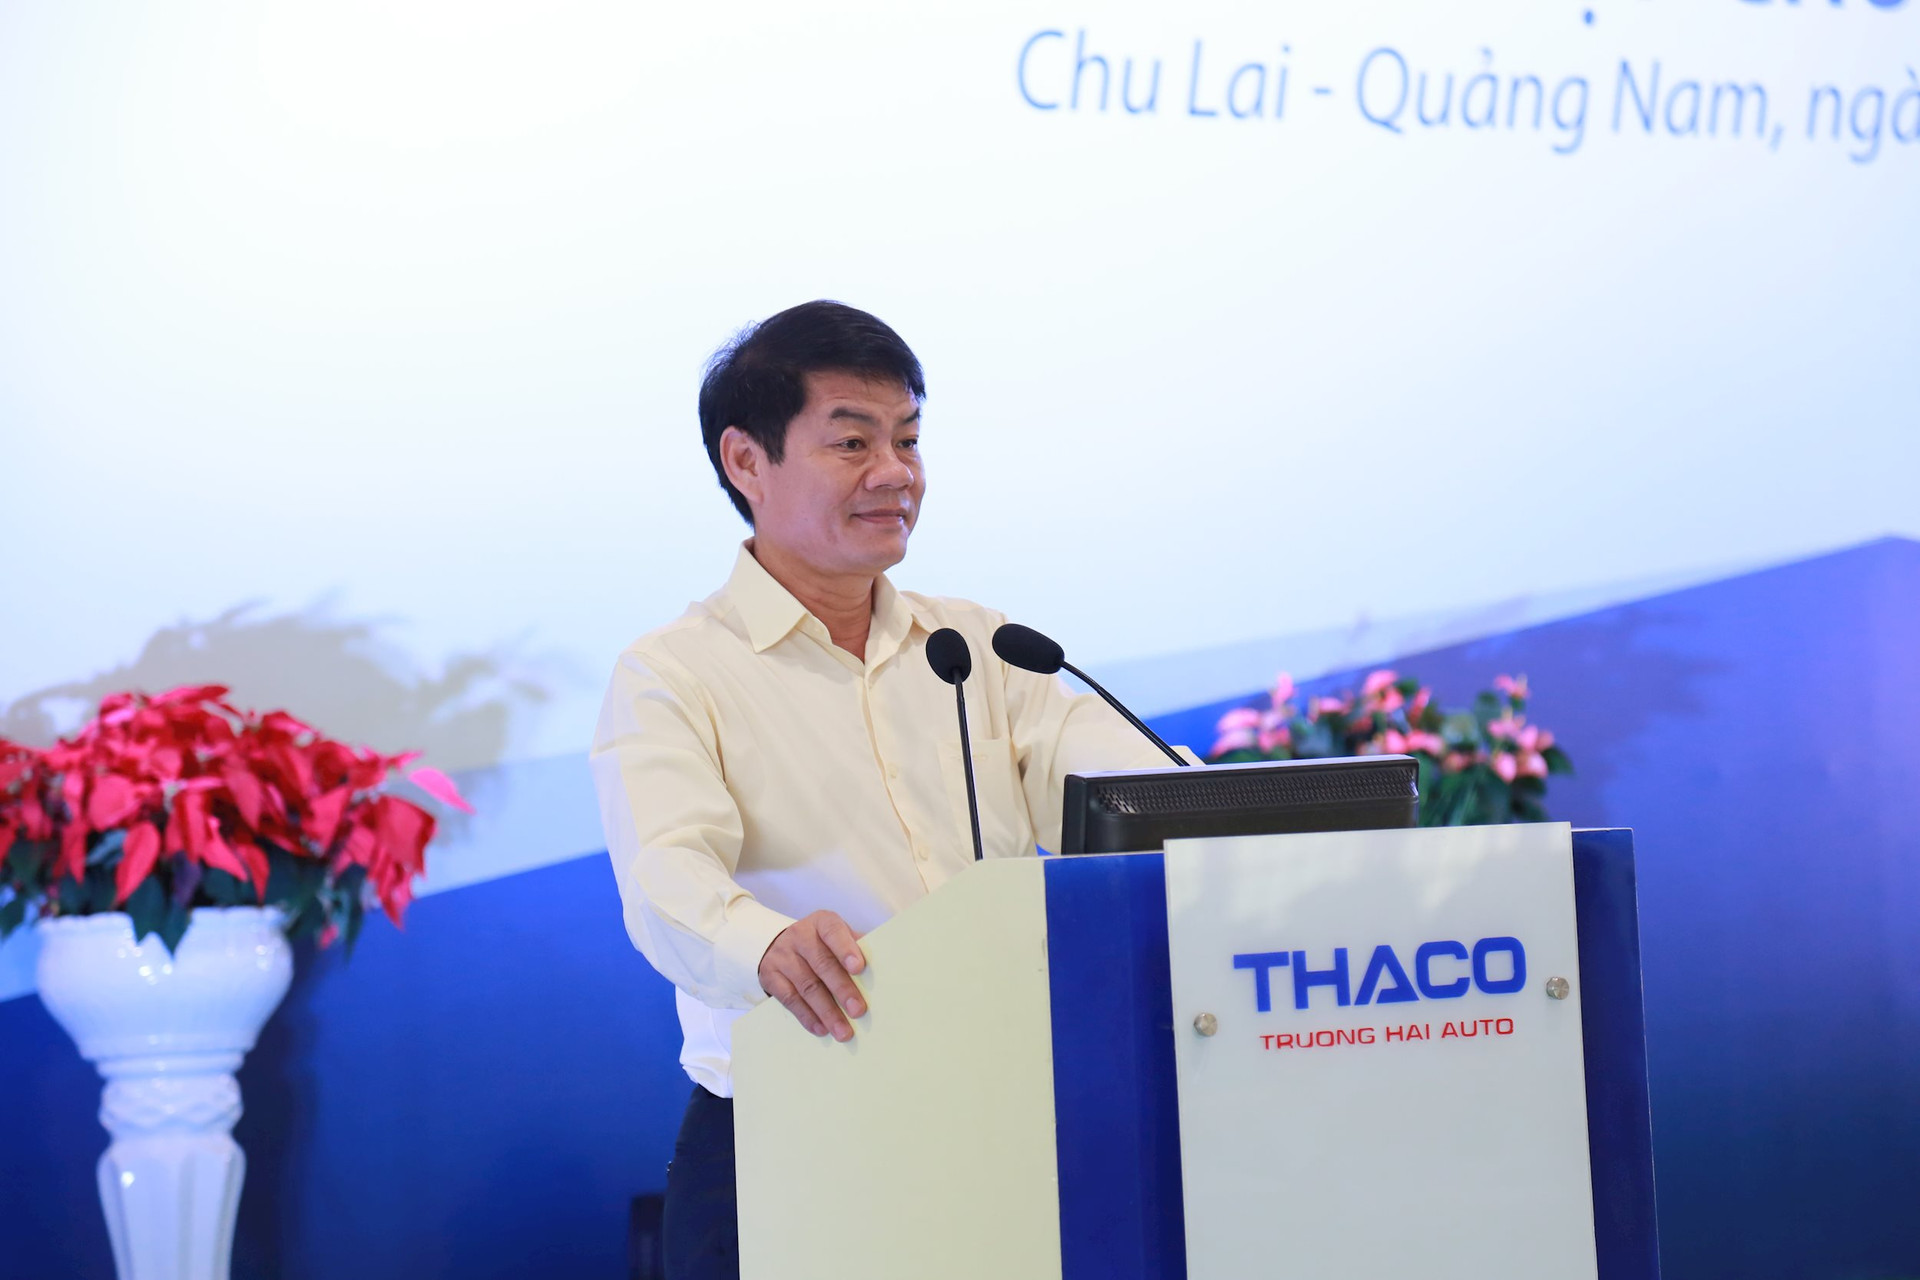 Ngành thuế Quảng Nam 'lo lắng' về Thaco của tỷ phú Trần Bá Dương - Ảnh 1.